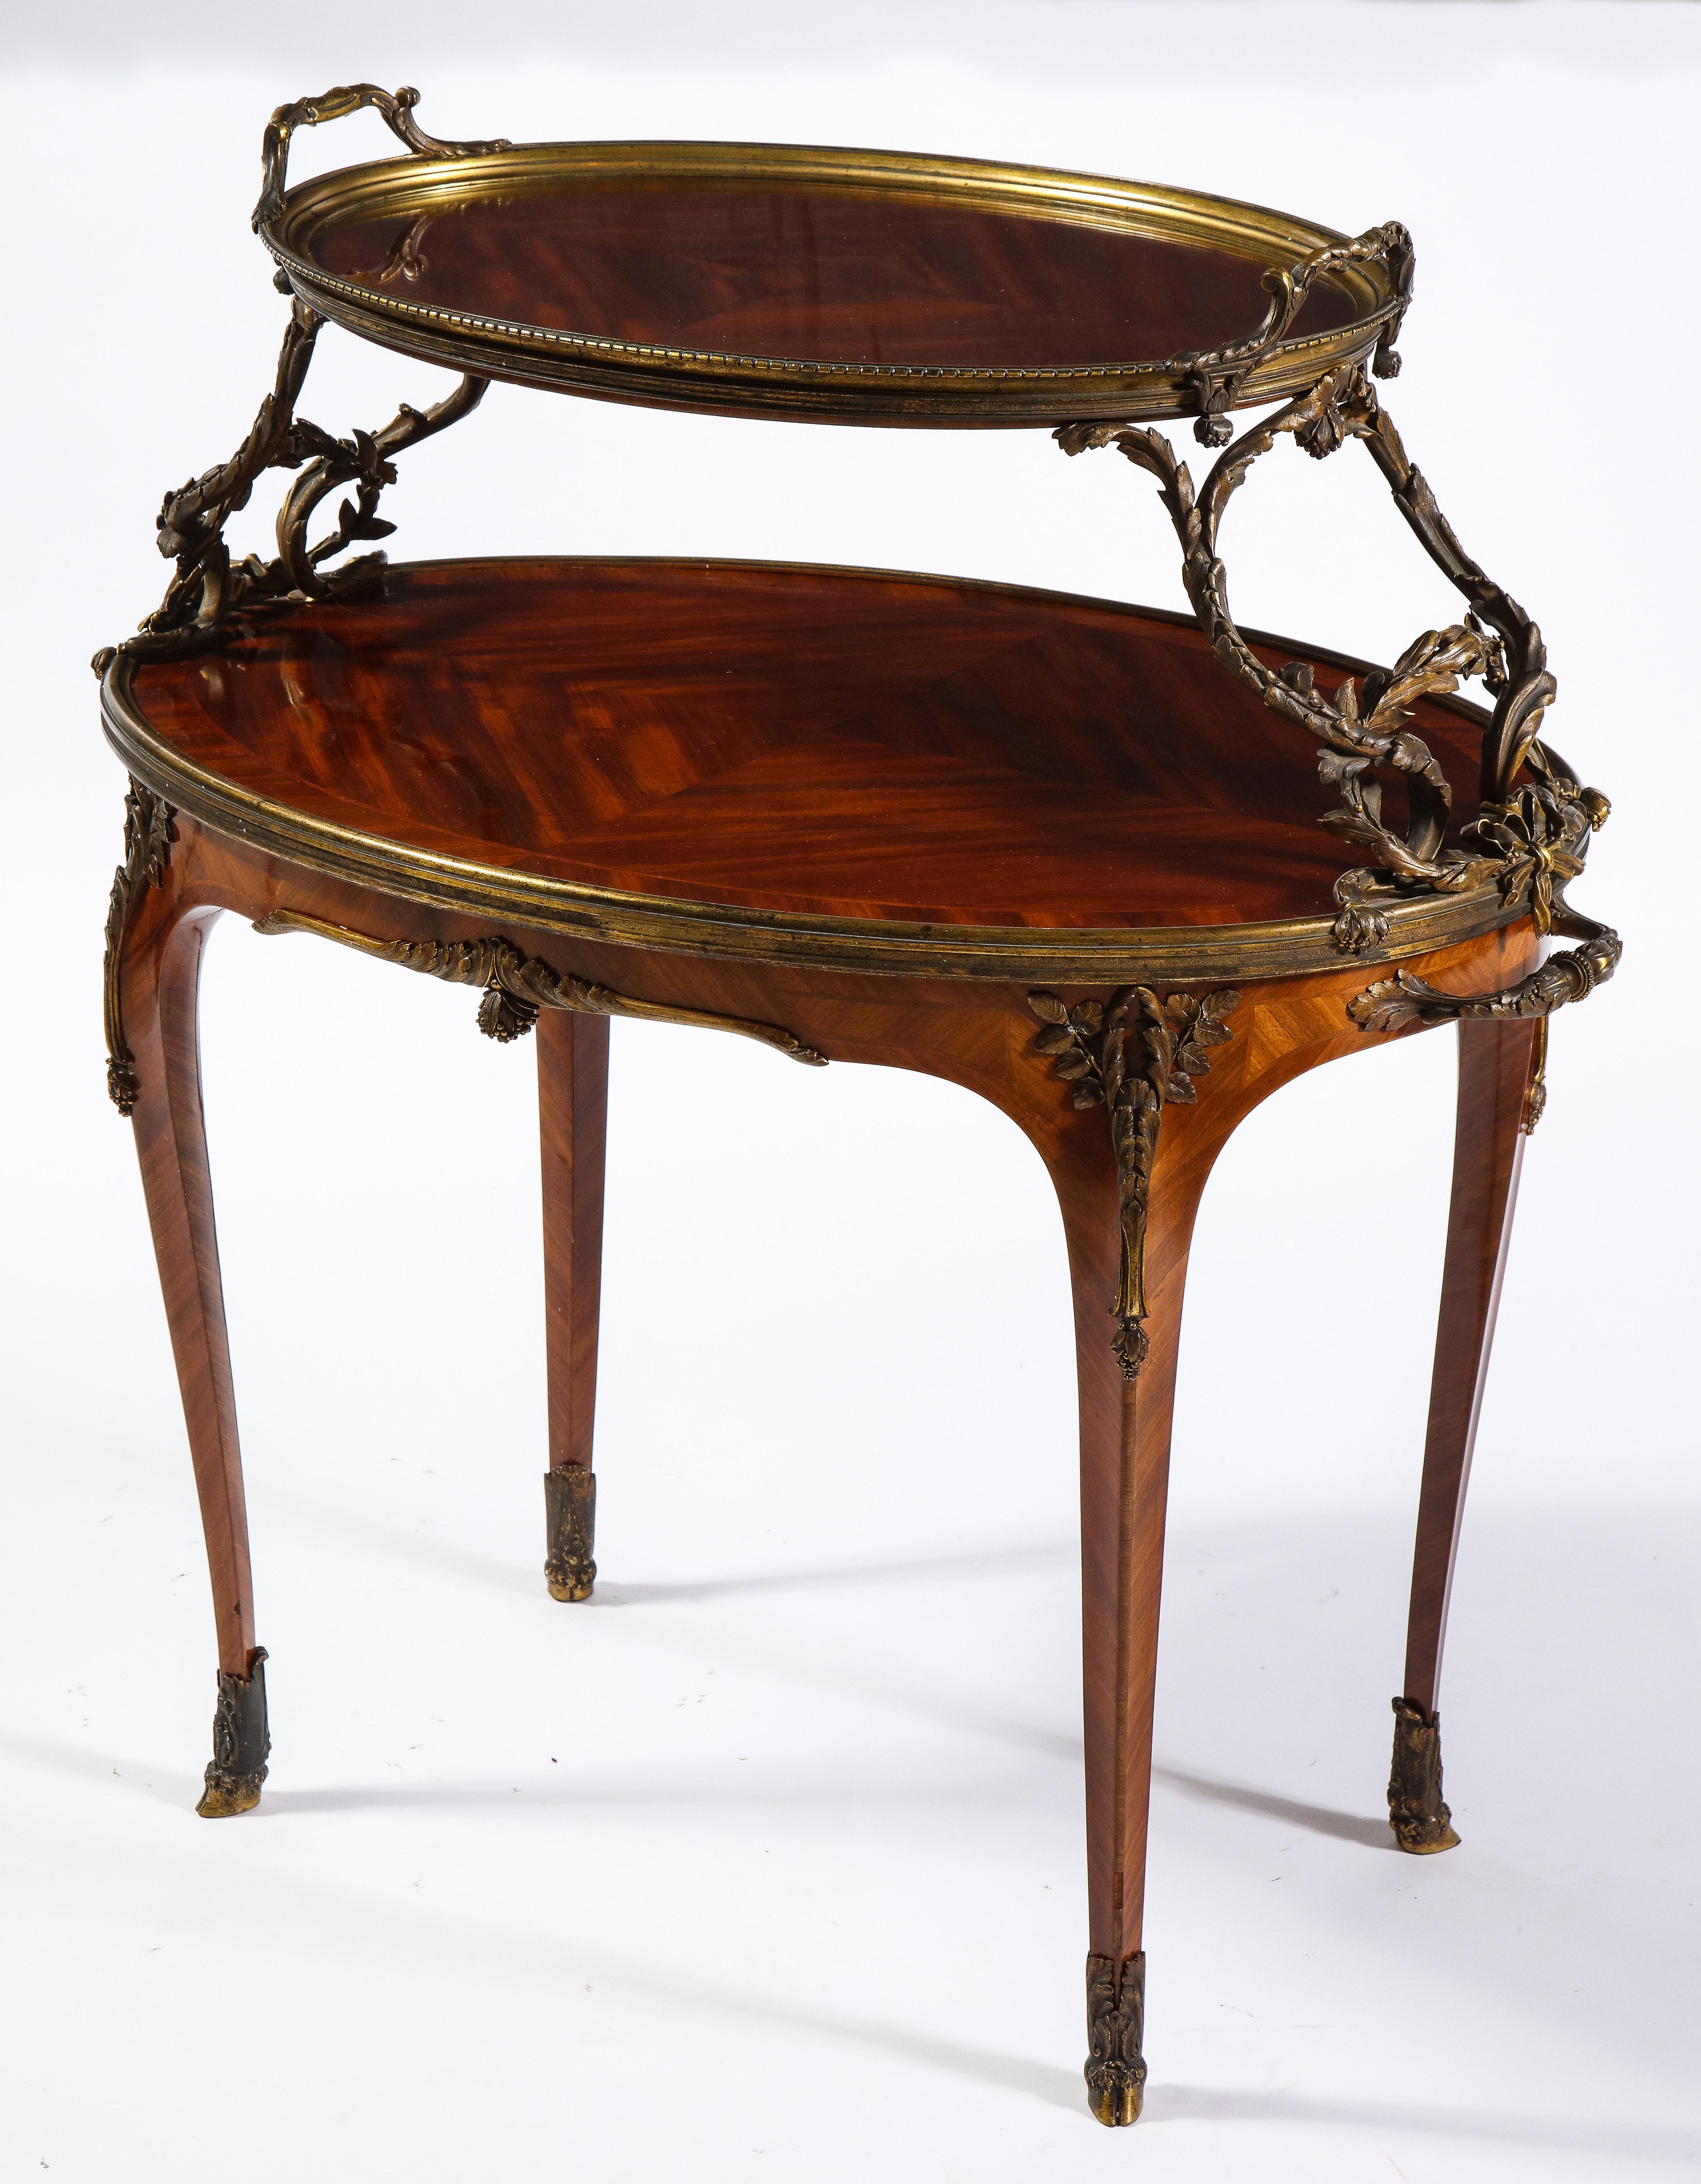 Ein fabelhafter französischer Mahagoni-Tee-Tisch im Louis-XVI-Stil des 19. Jahrhunderts mit Ormolu-Beschlägen, der Paul Sormani zugeschrieben wird. Die eiförmige obere Etage mit abnehmbarem Glastablett, das von verschlungenem Blattwerk getragen